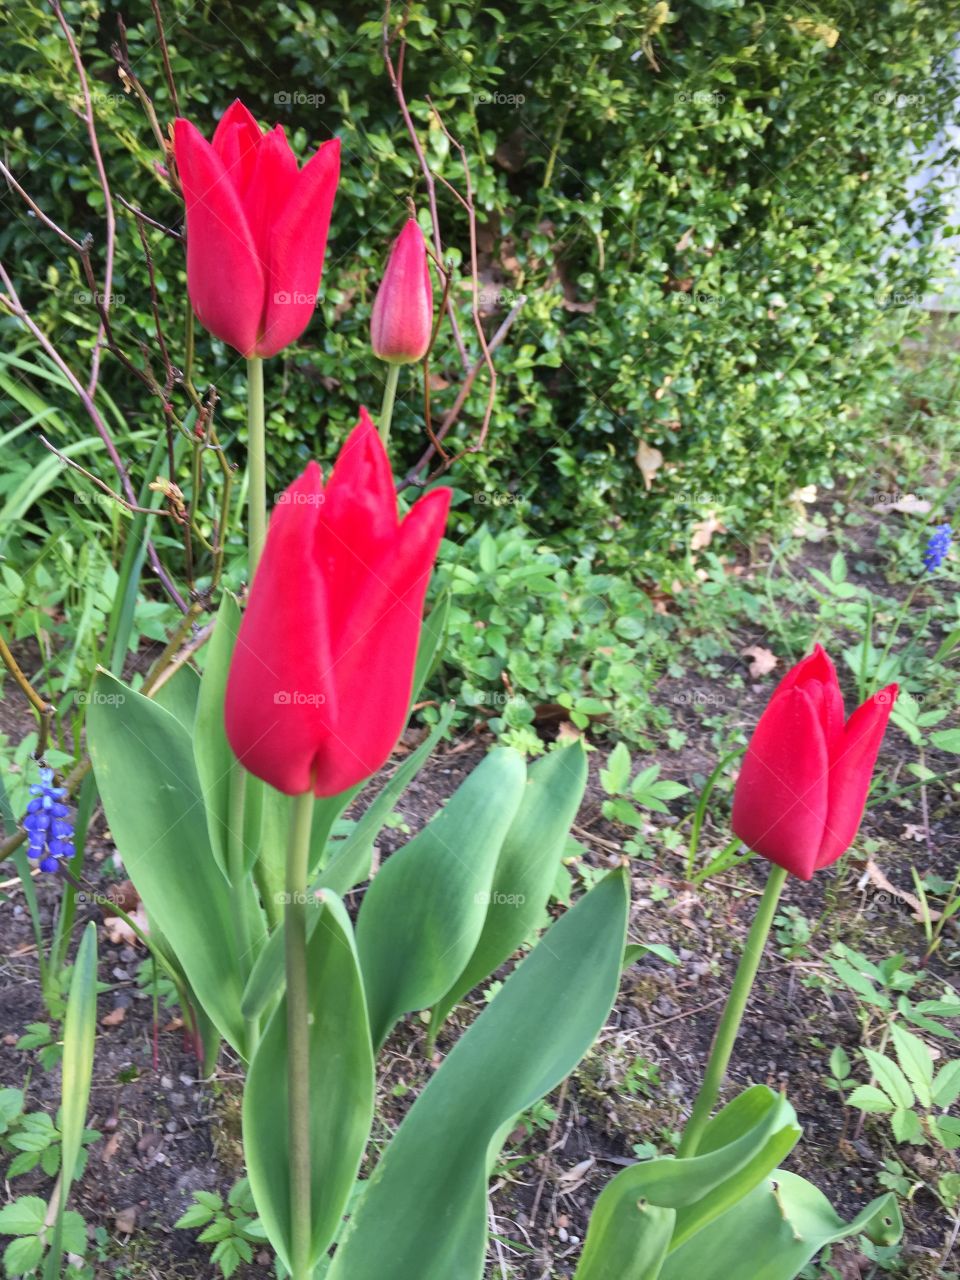 Tulips in my garden 